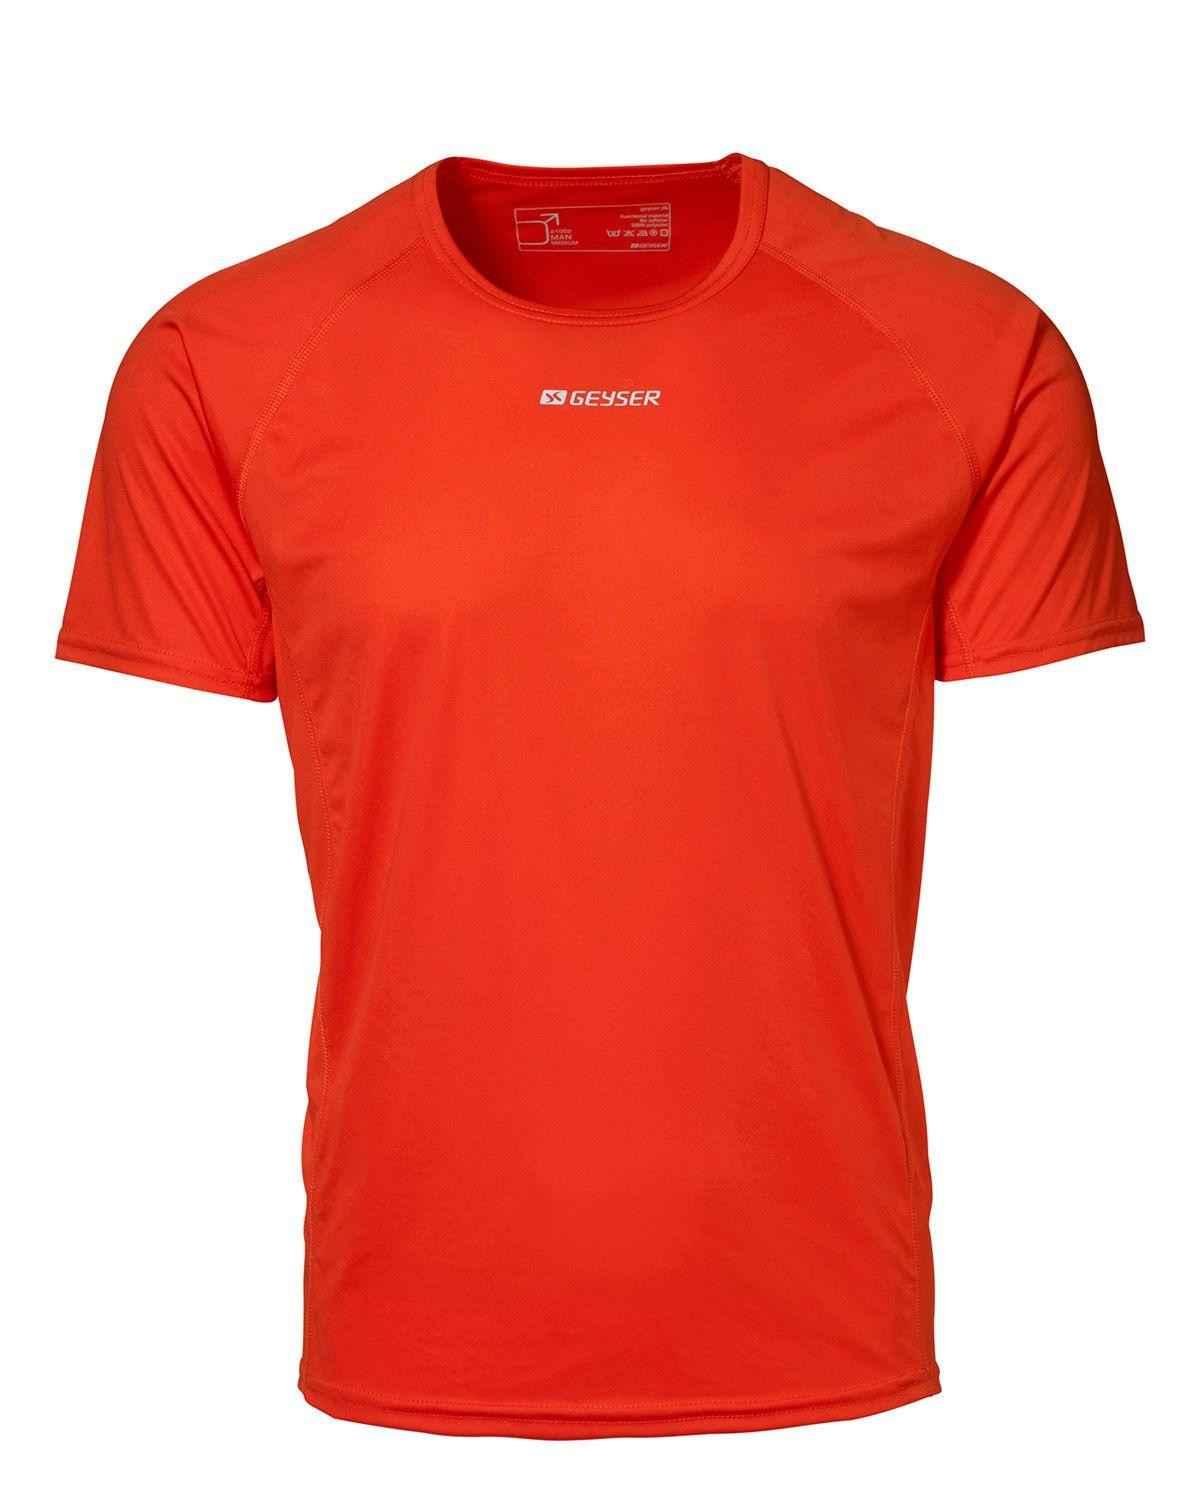 GEYSER Active T-shirt til Herre (Orange, S)